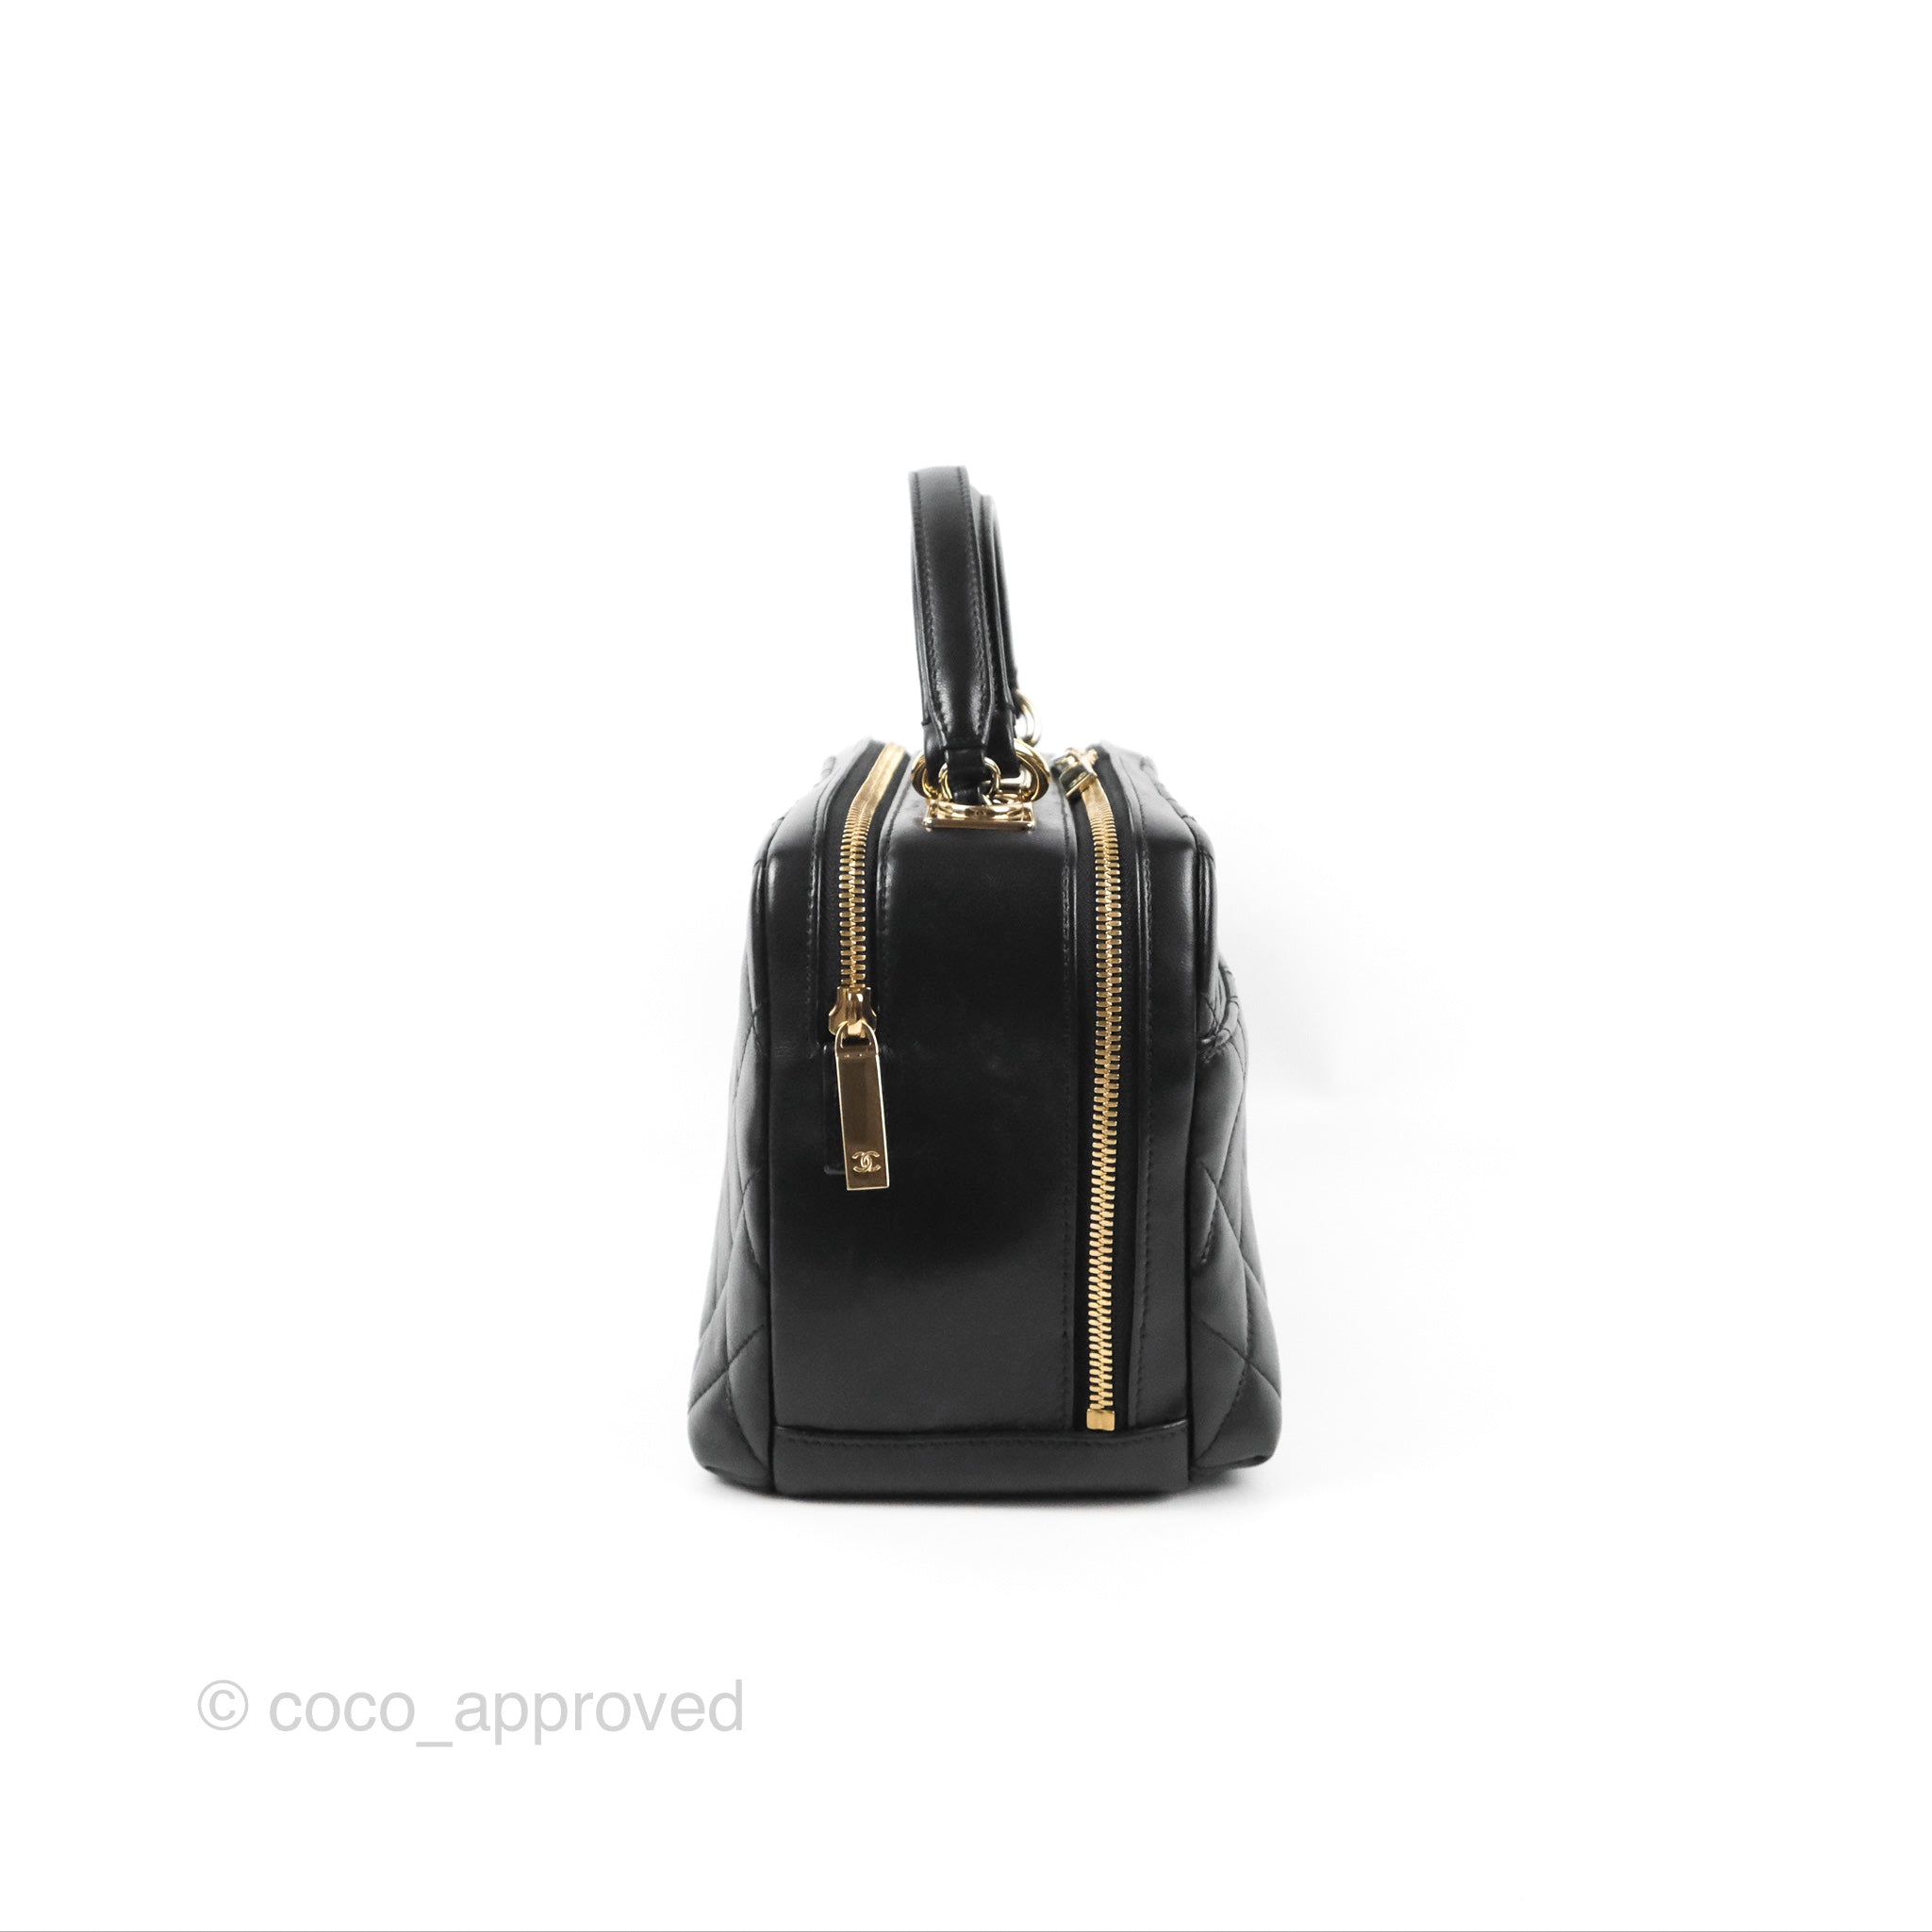 Fashion Adidas Bag Bowling Handbag Chanel - Chanel Trendy Cc Light